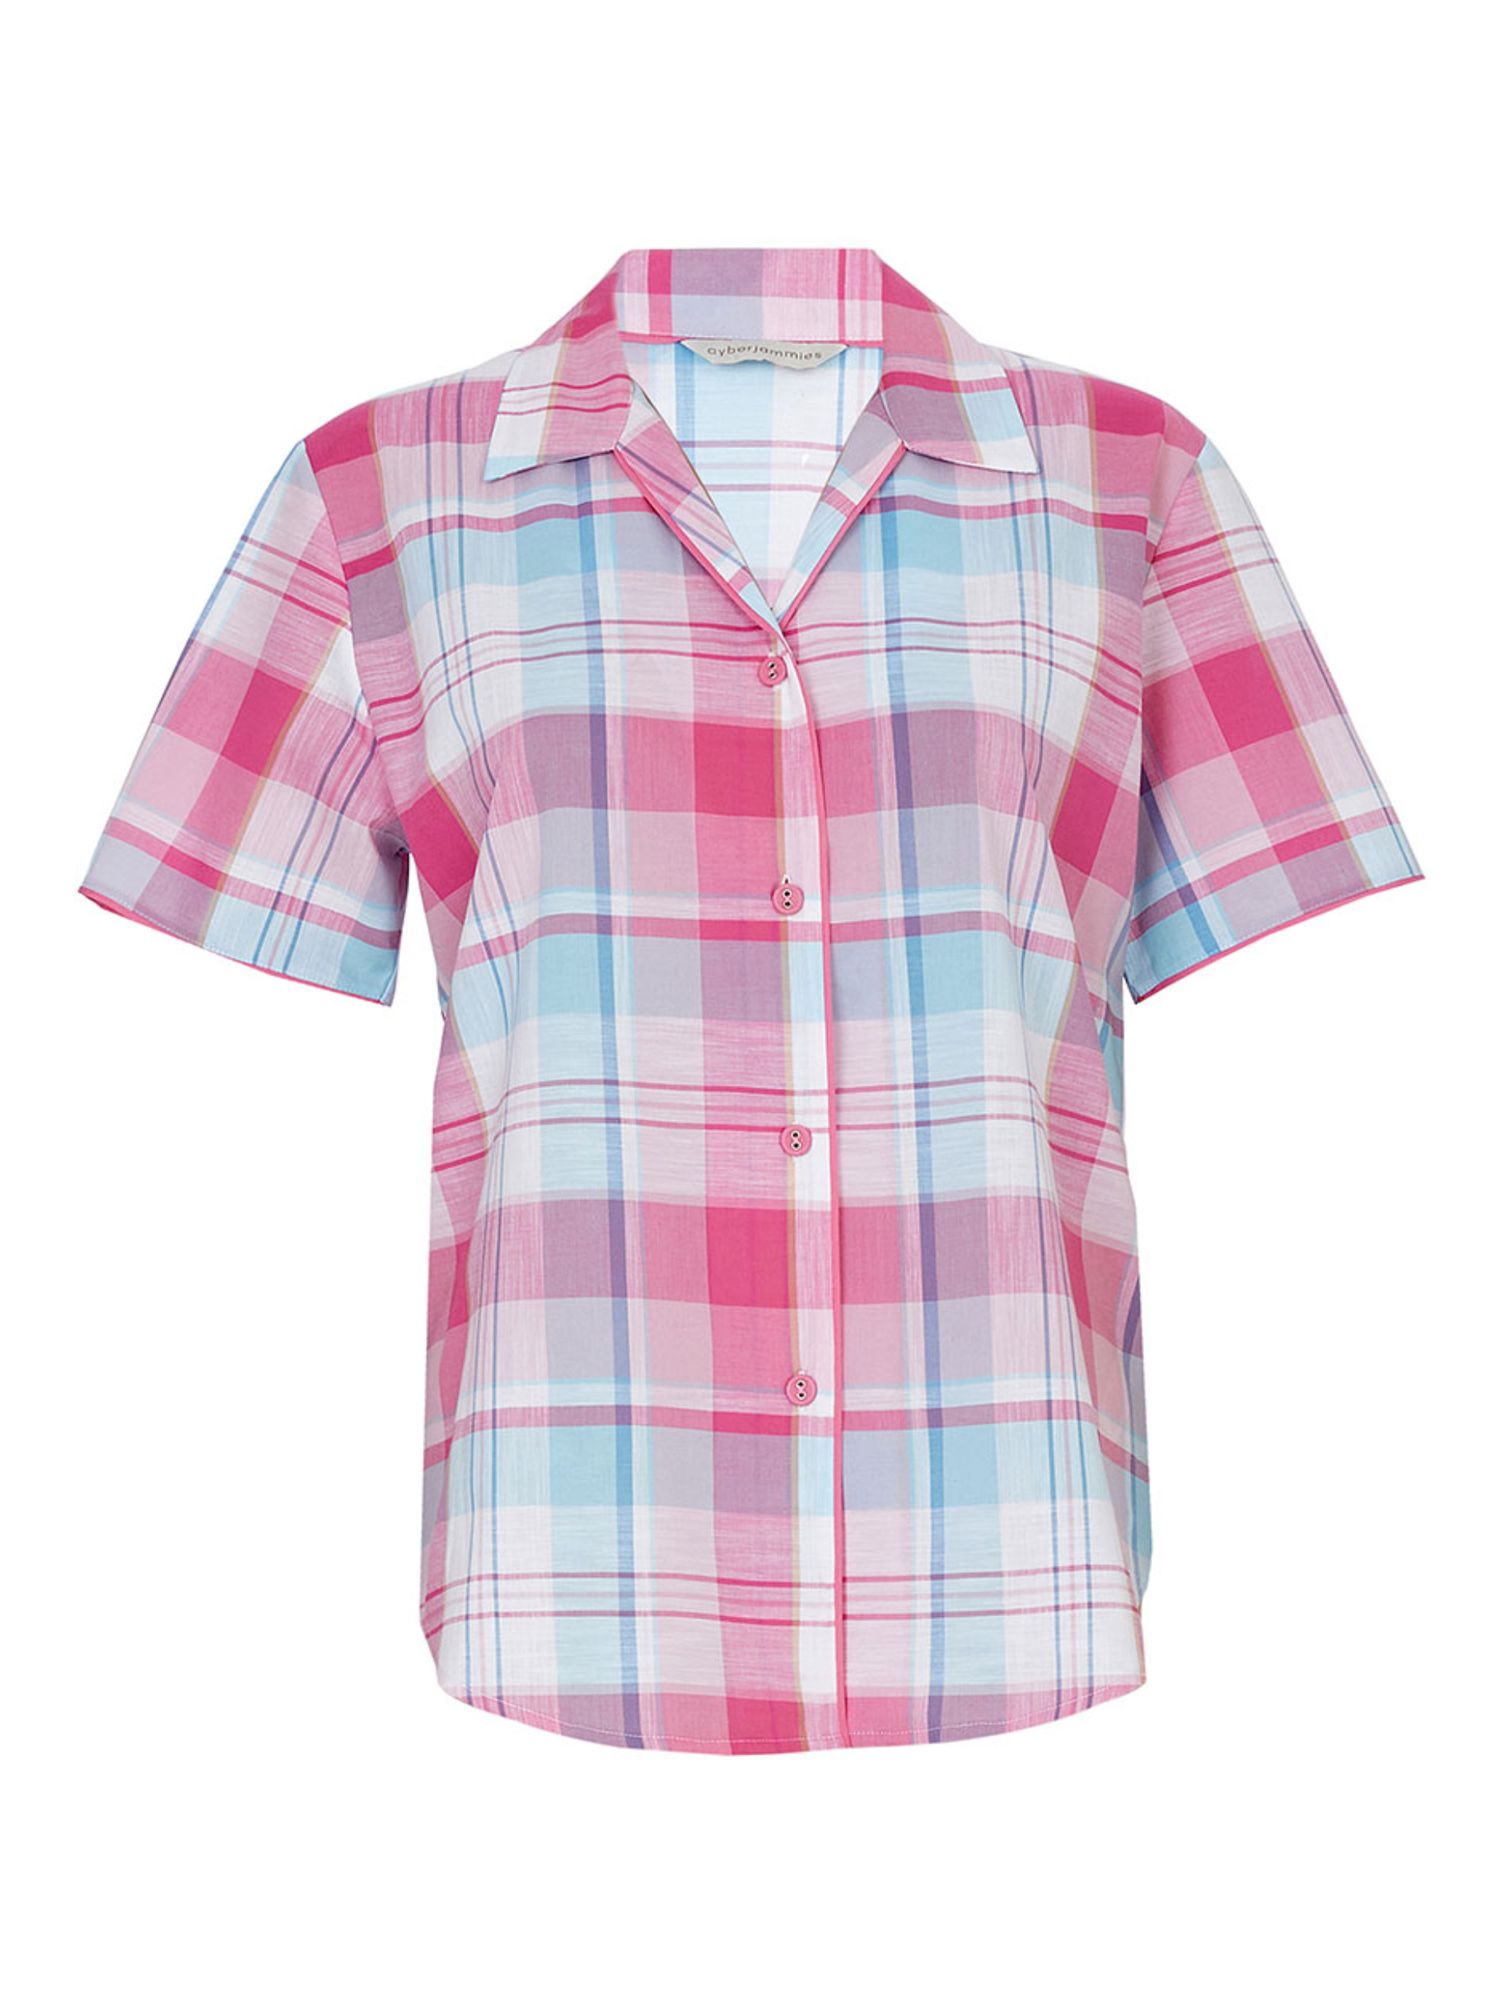 Buy Cyberjammies Shelly Check Short Sleeve Pyjama Top, Pink Online at johnlewis.com